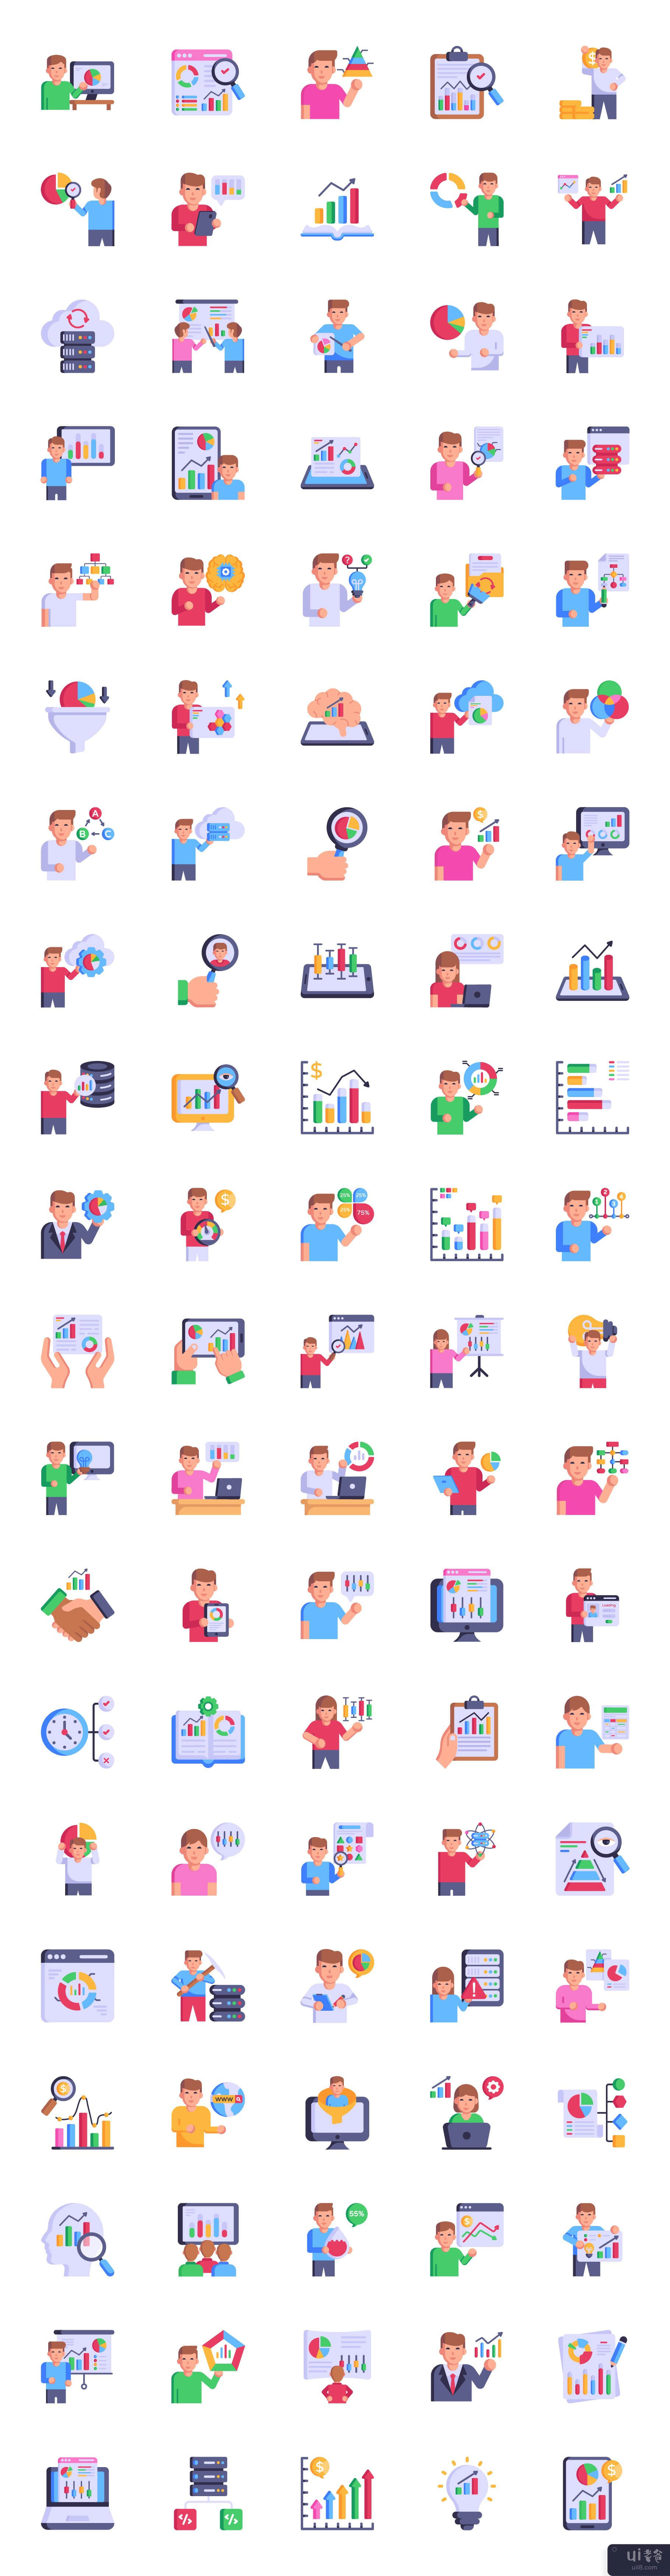 100 个数据分析图标包(Pack of 100 Data Analytics Icons)插图